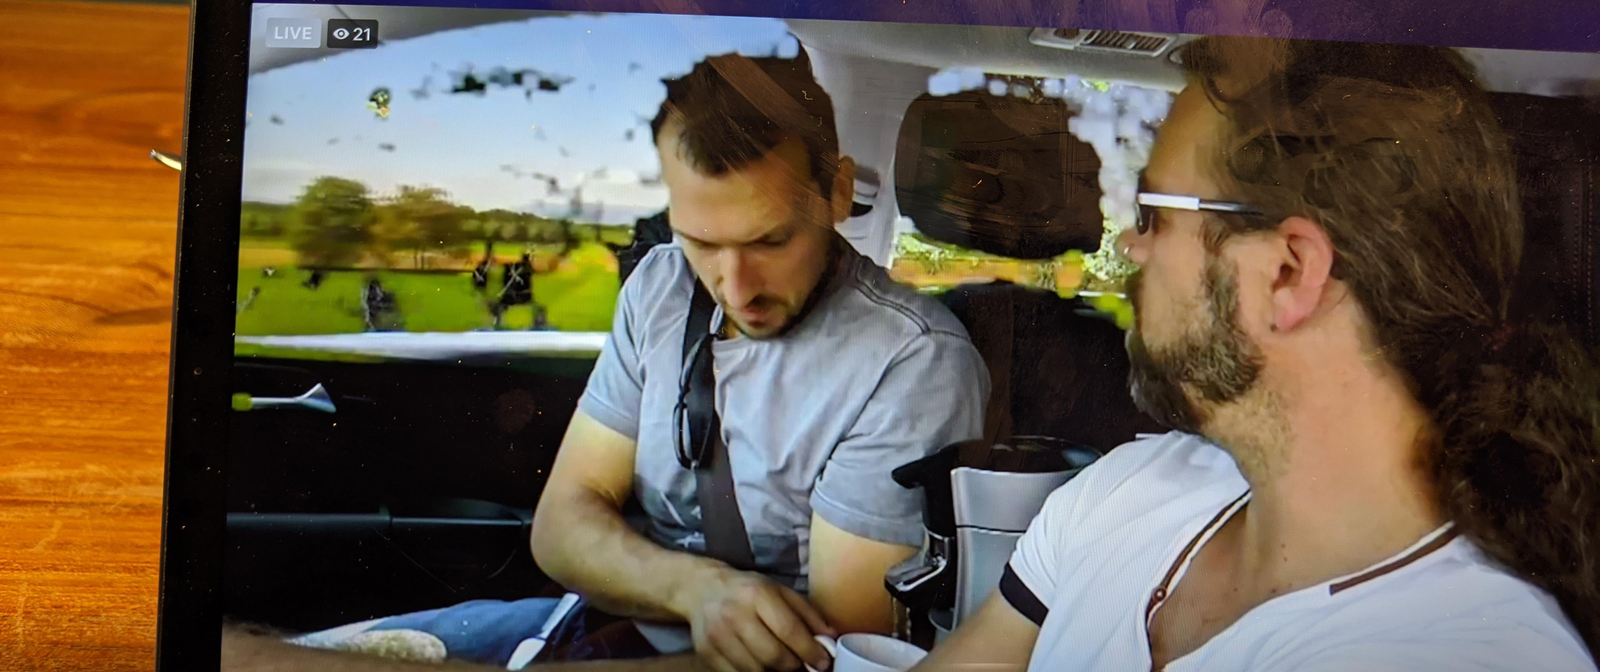 Auf einem Tablet-Bildschirm wird ein Bild von zwei Männern in einem Auto gezeigt.